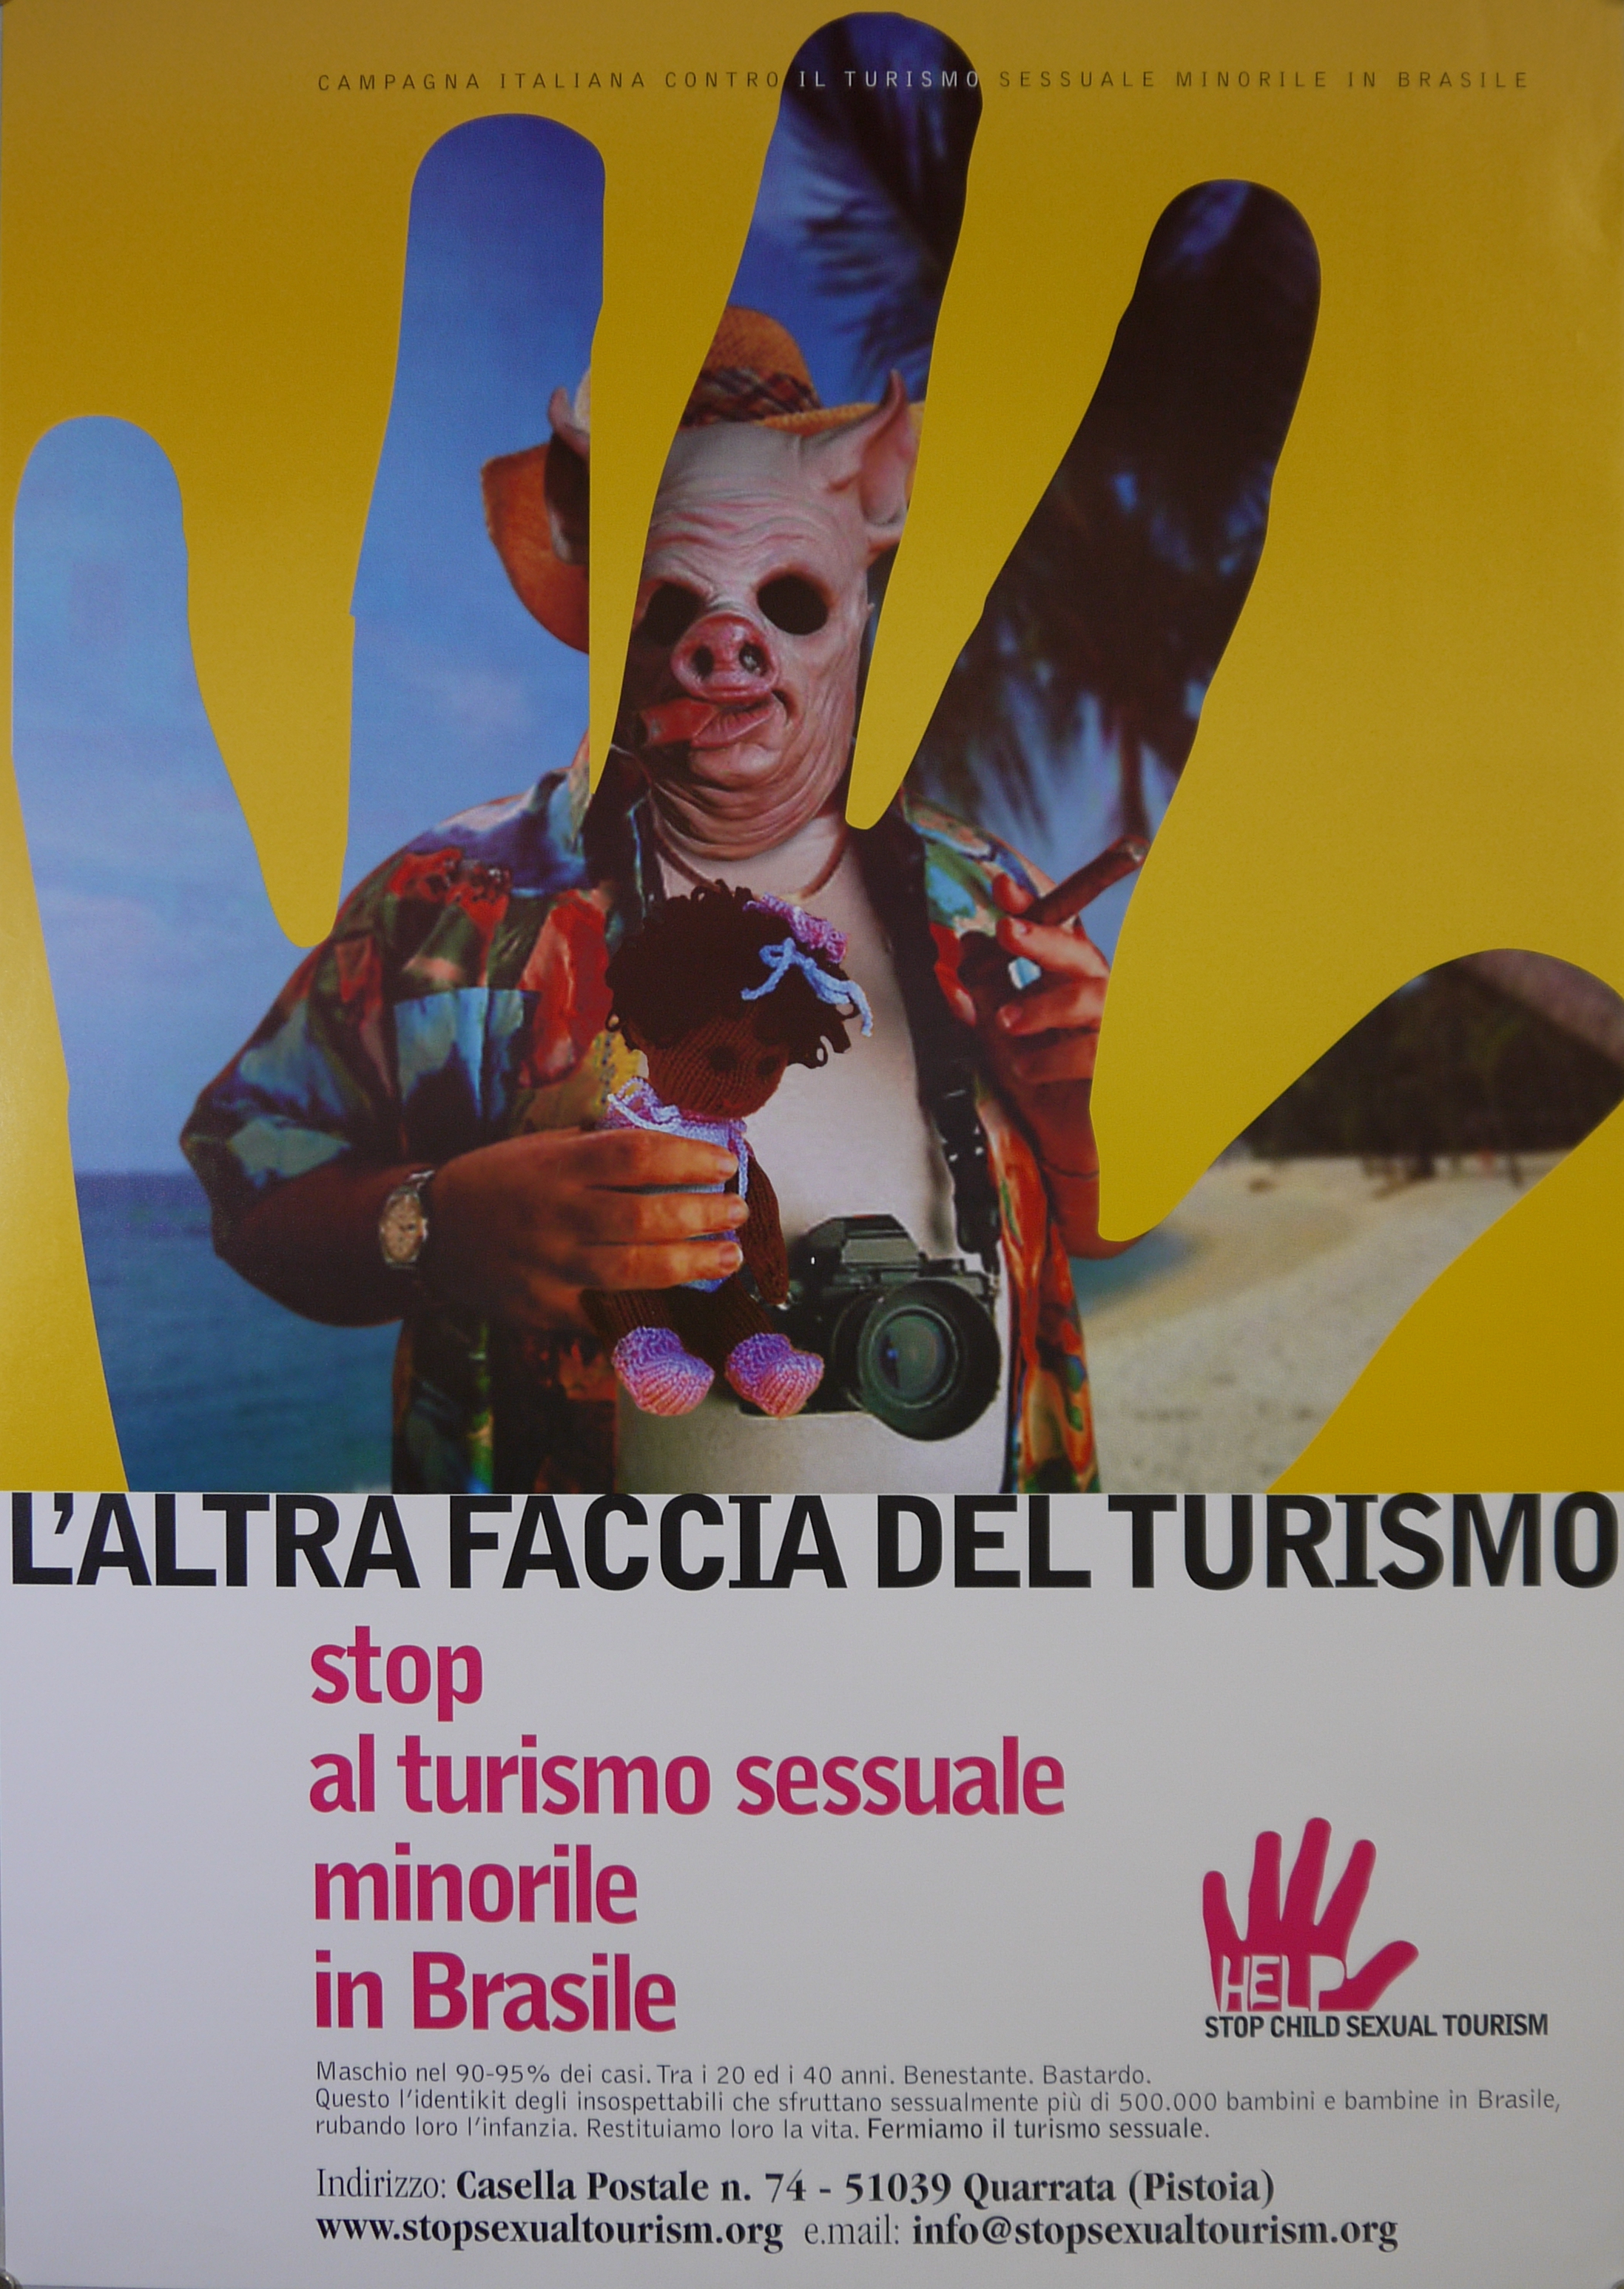 Turista con faccia da maiale s'intravvede attraverso uno squarcio a forma di mano nel fondo giallo del manifesto (manifesto) - ambito toscano (inizio XXI)